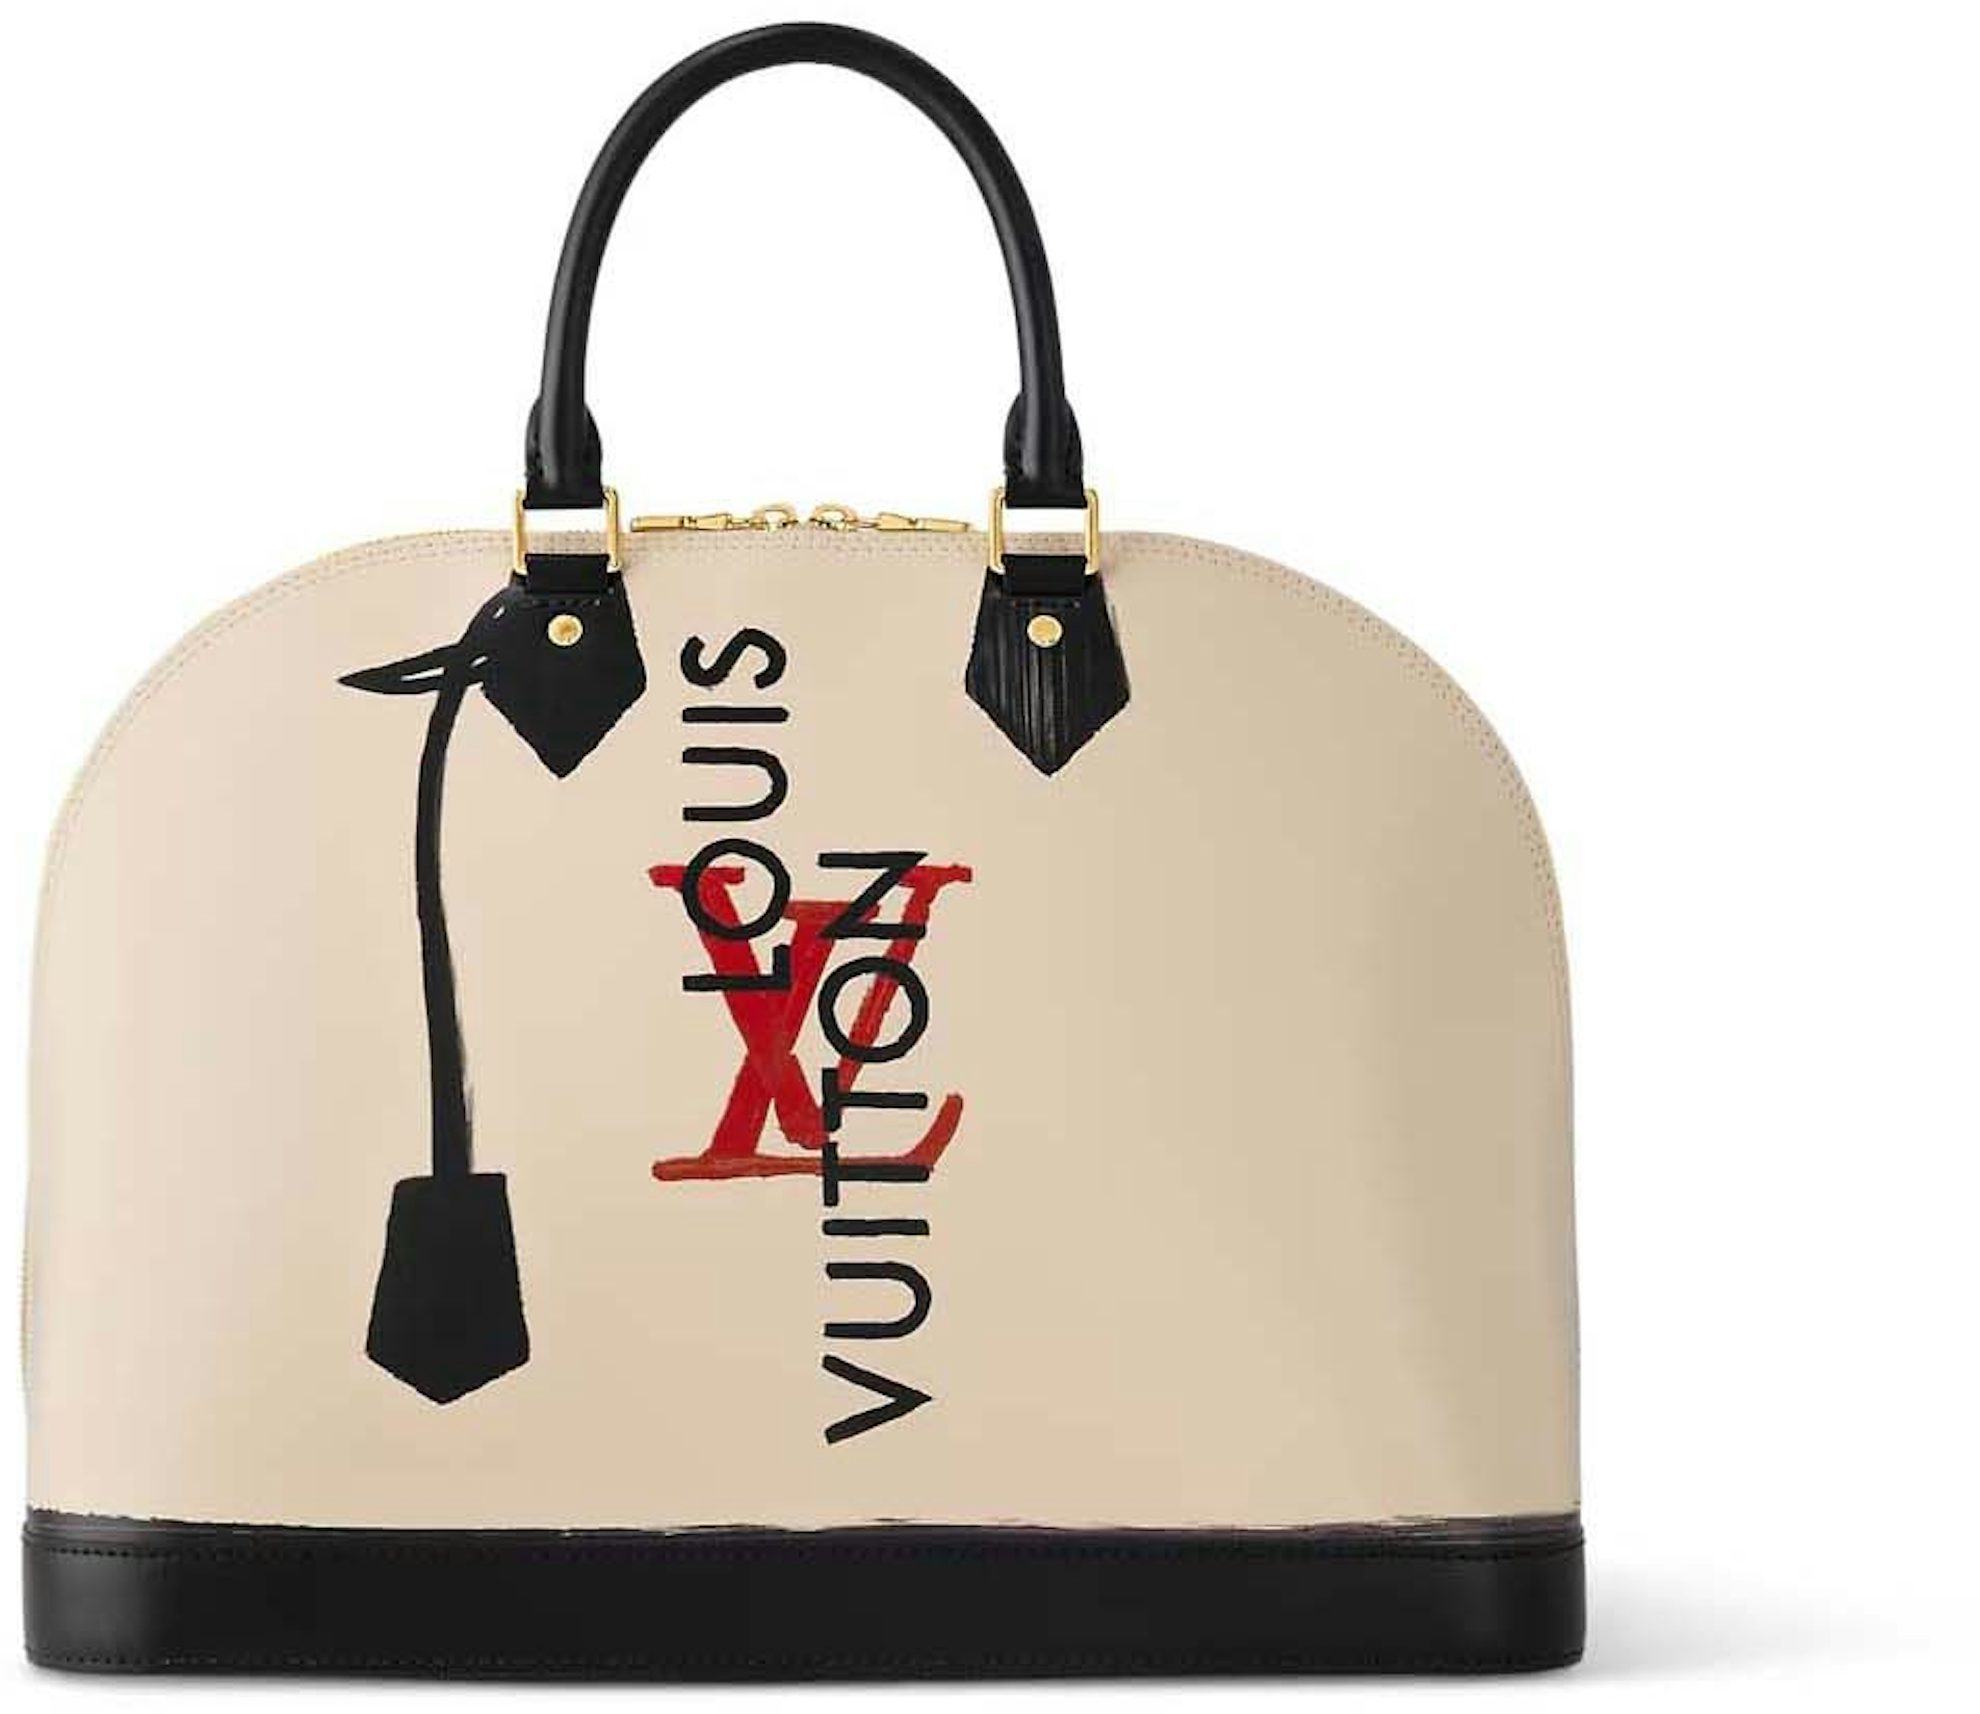 Louis Vuitton Vernis Roses Alma Monogram GM Bag in Rose Pop